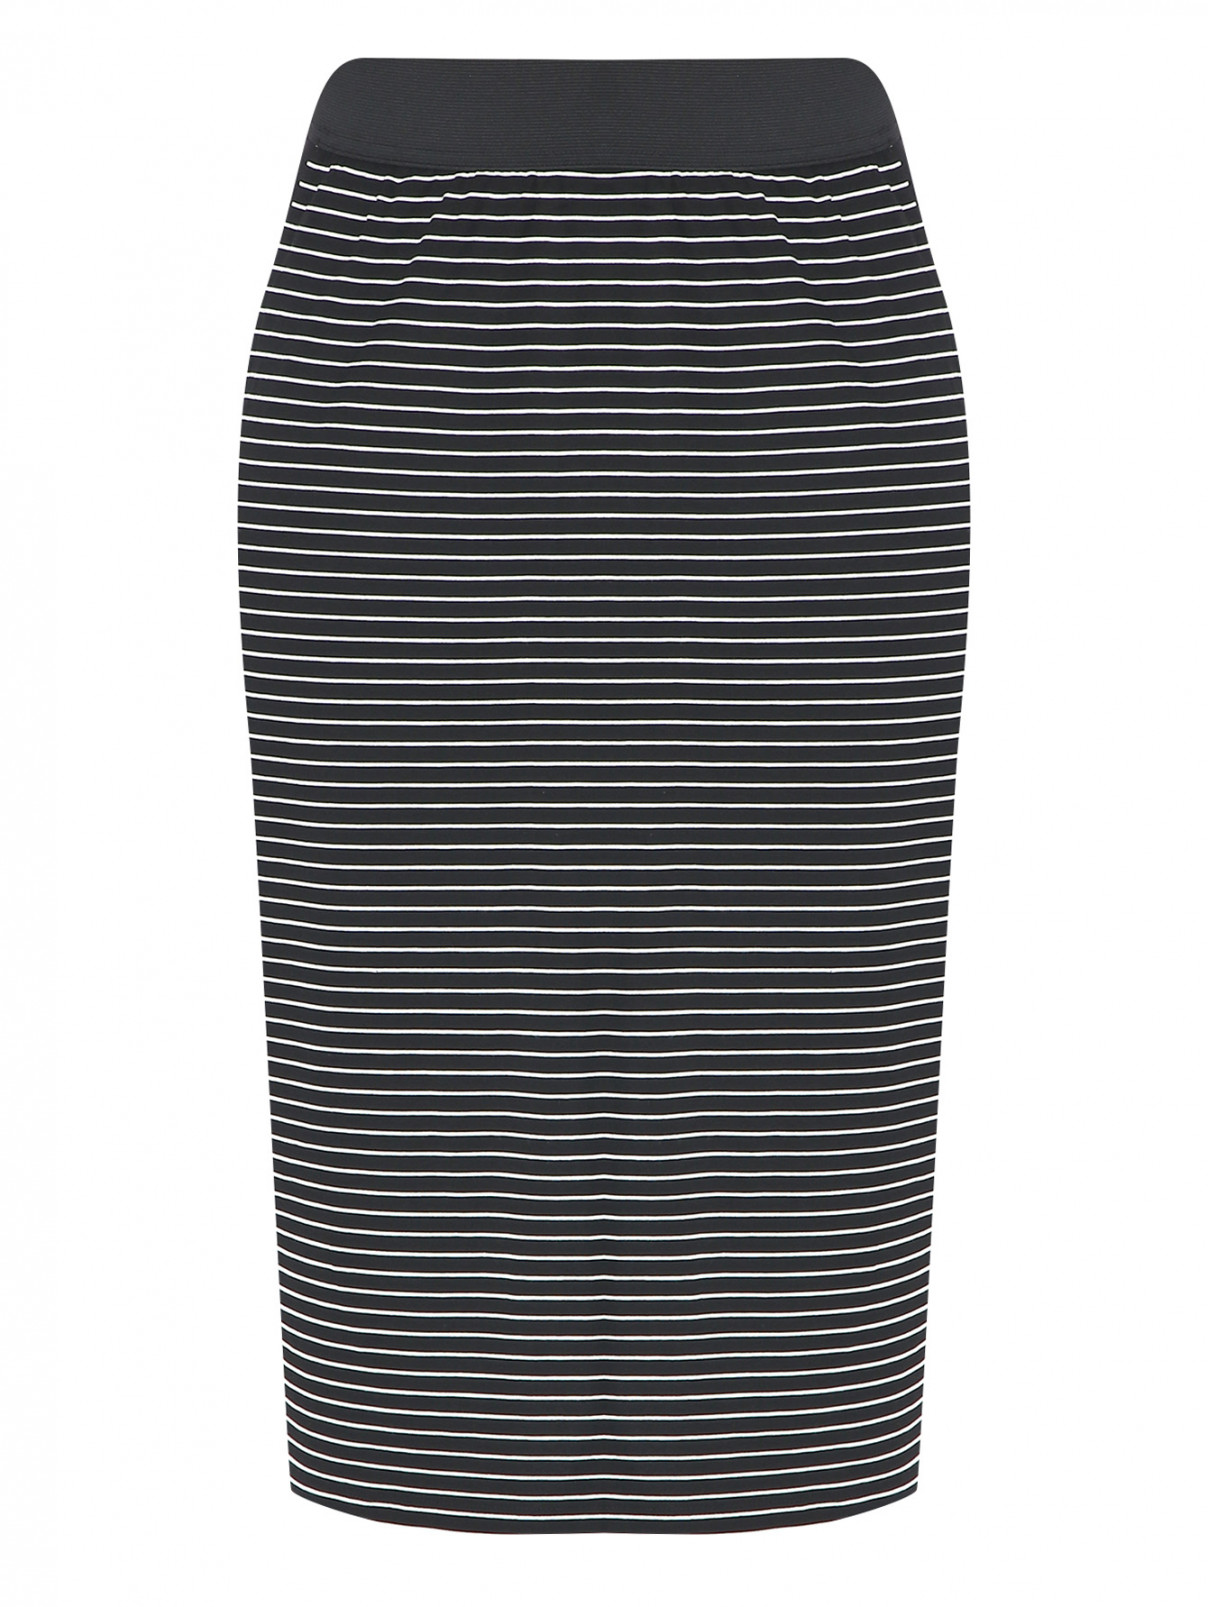 Трикотажная юбка с узором полоска Elena Miro  –  Общий вид  – Цвет:  Черный